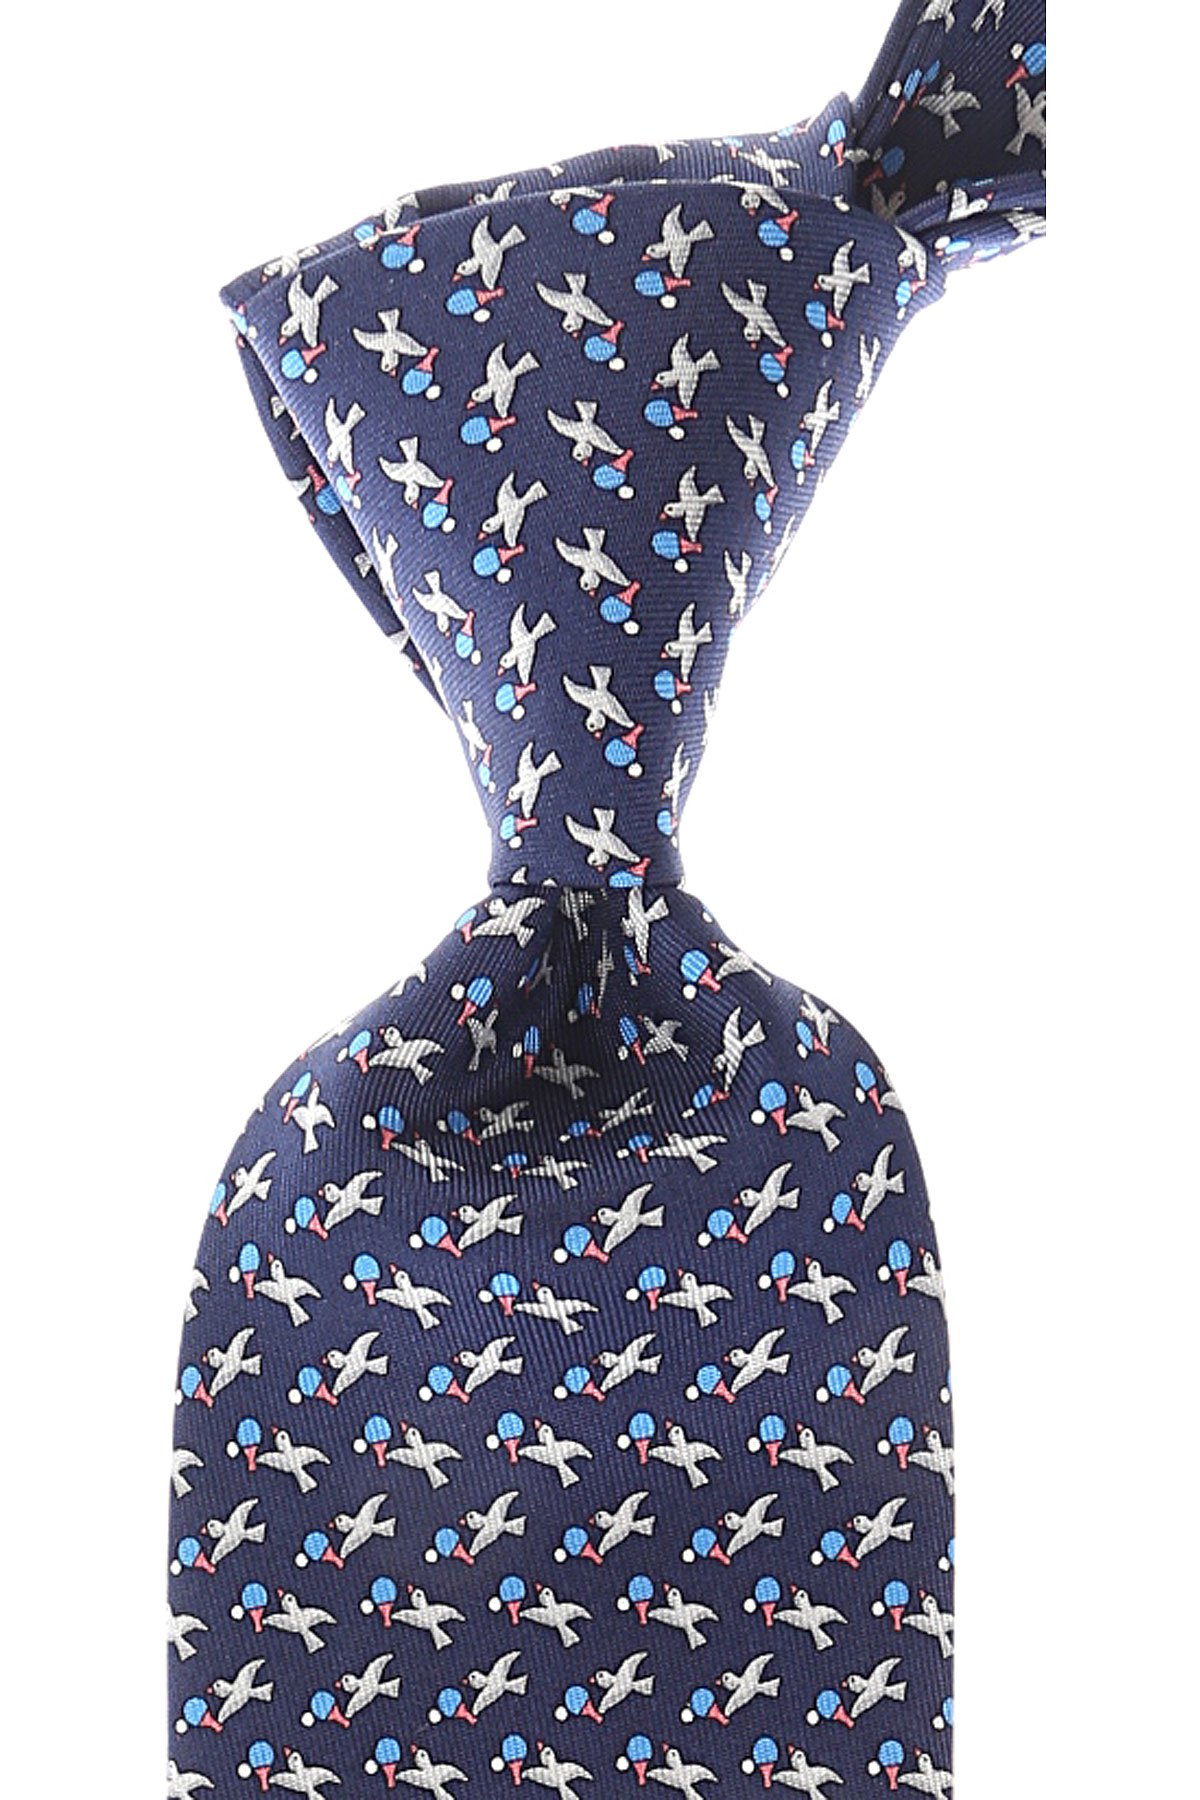 Cravates Ferragamo , Bleu marine, Soie, 2017